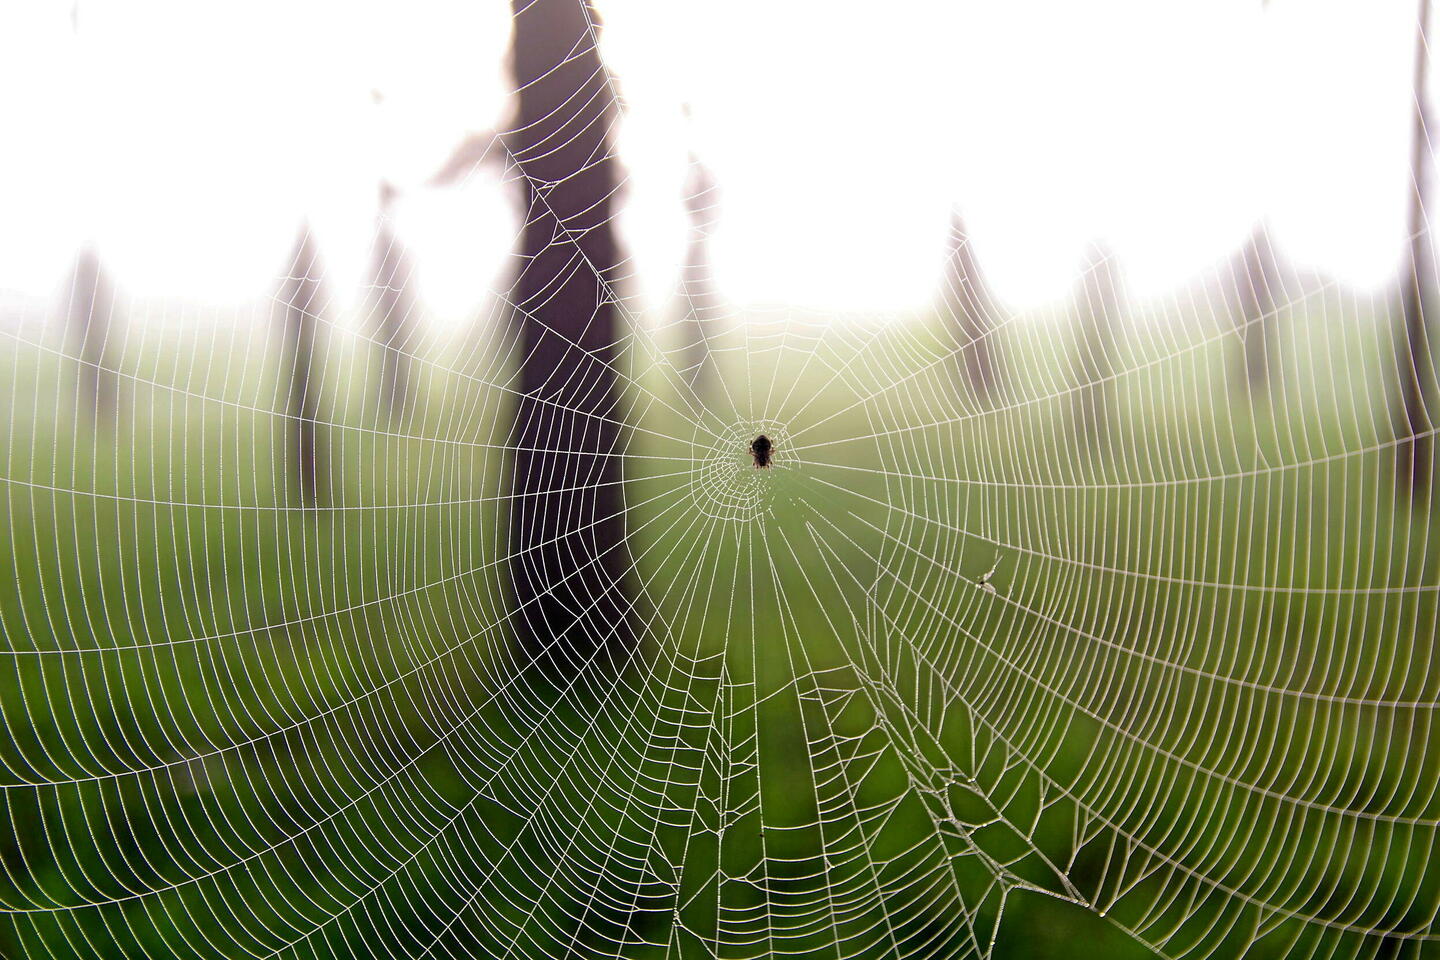 Grande-Bretagne : des araignées sauteuses invasives se répandent